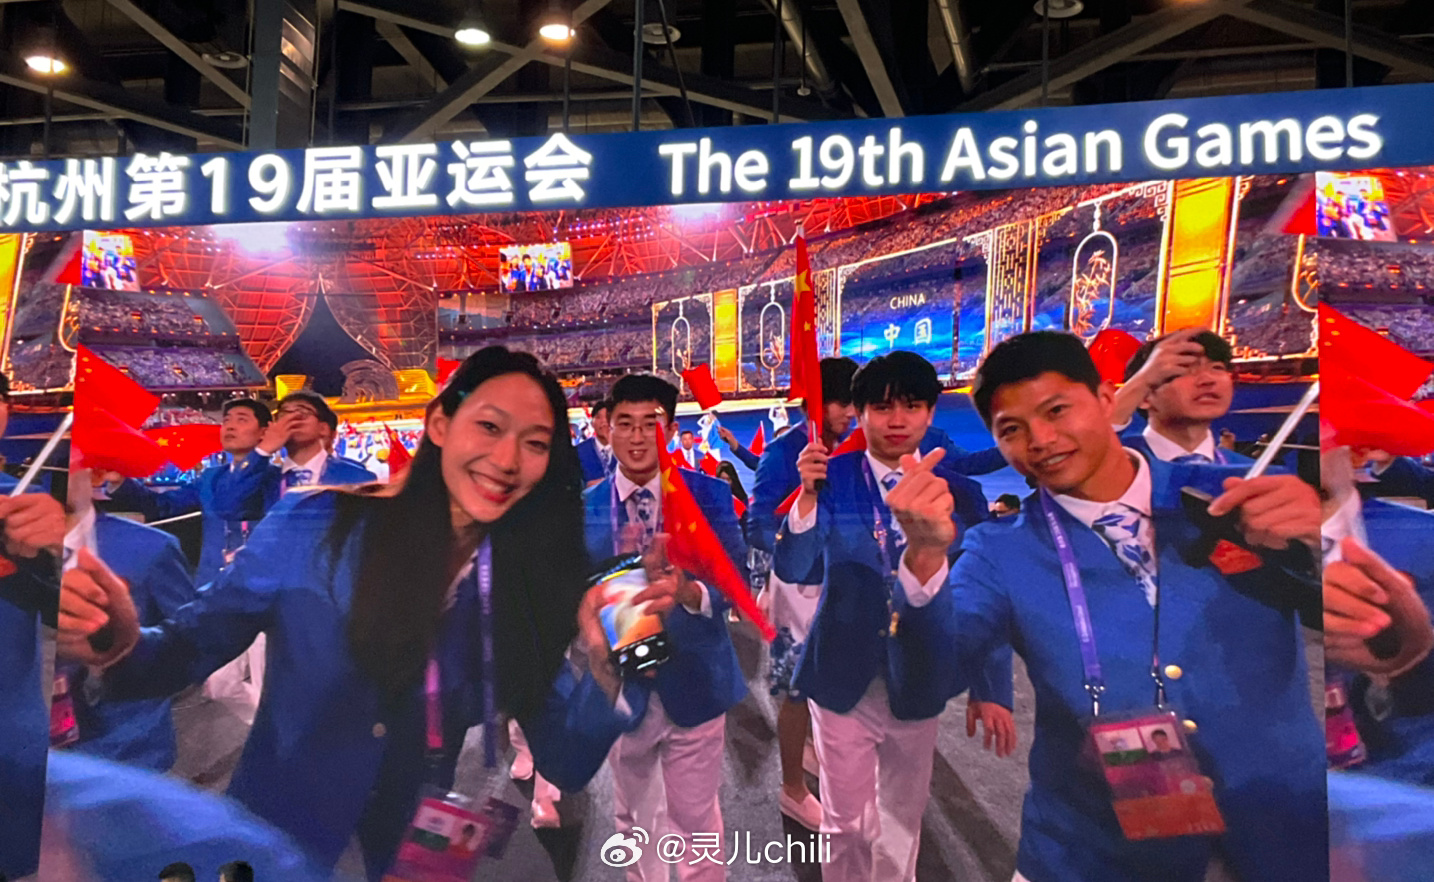 灵儿分享开幕式照片：《王者荣耀》国家队选手花海、Ming入镜